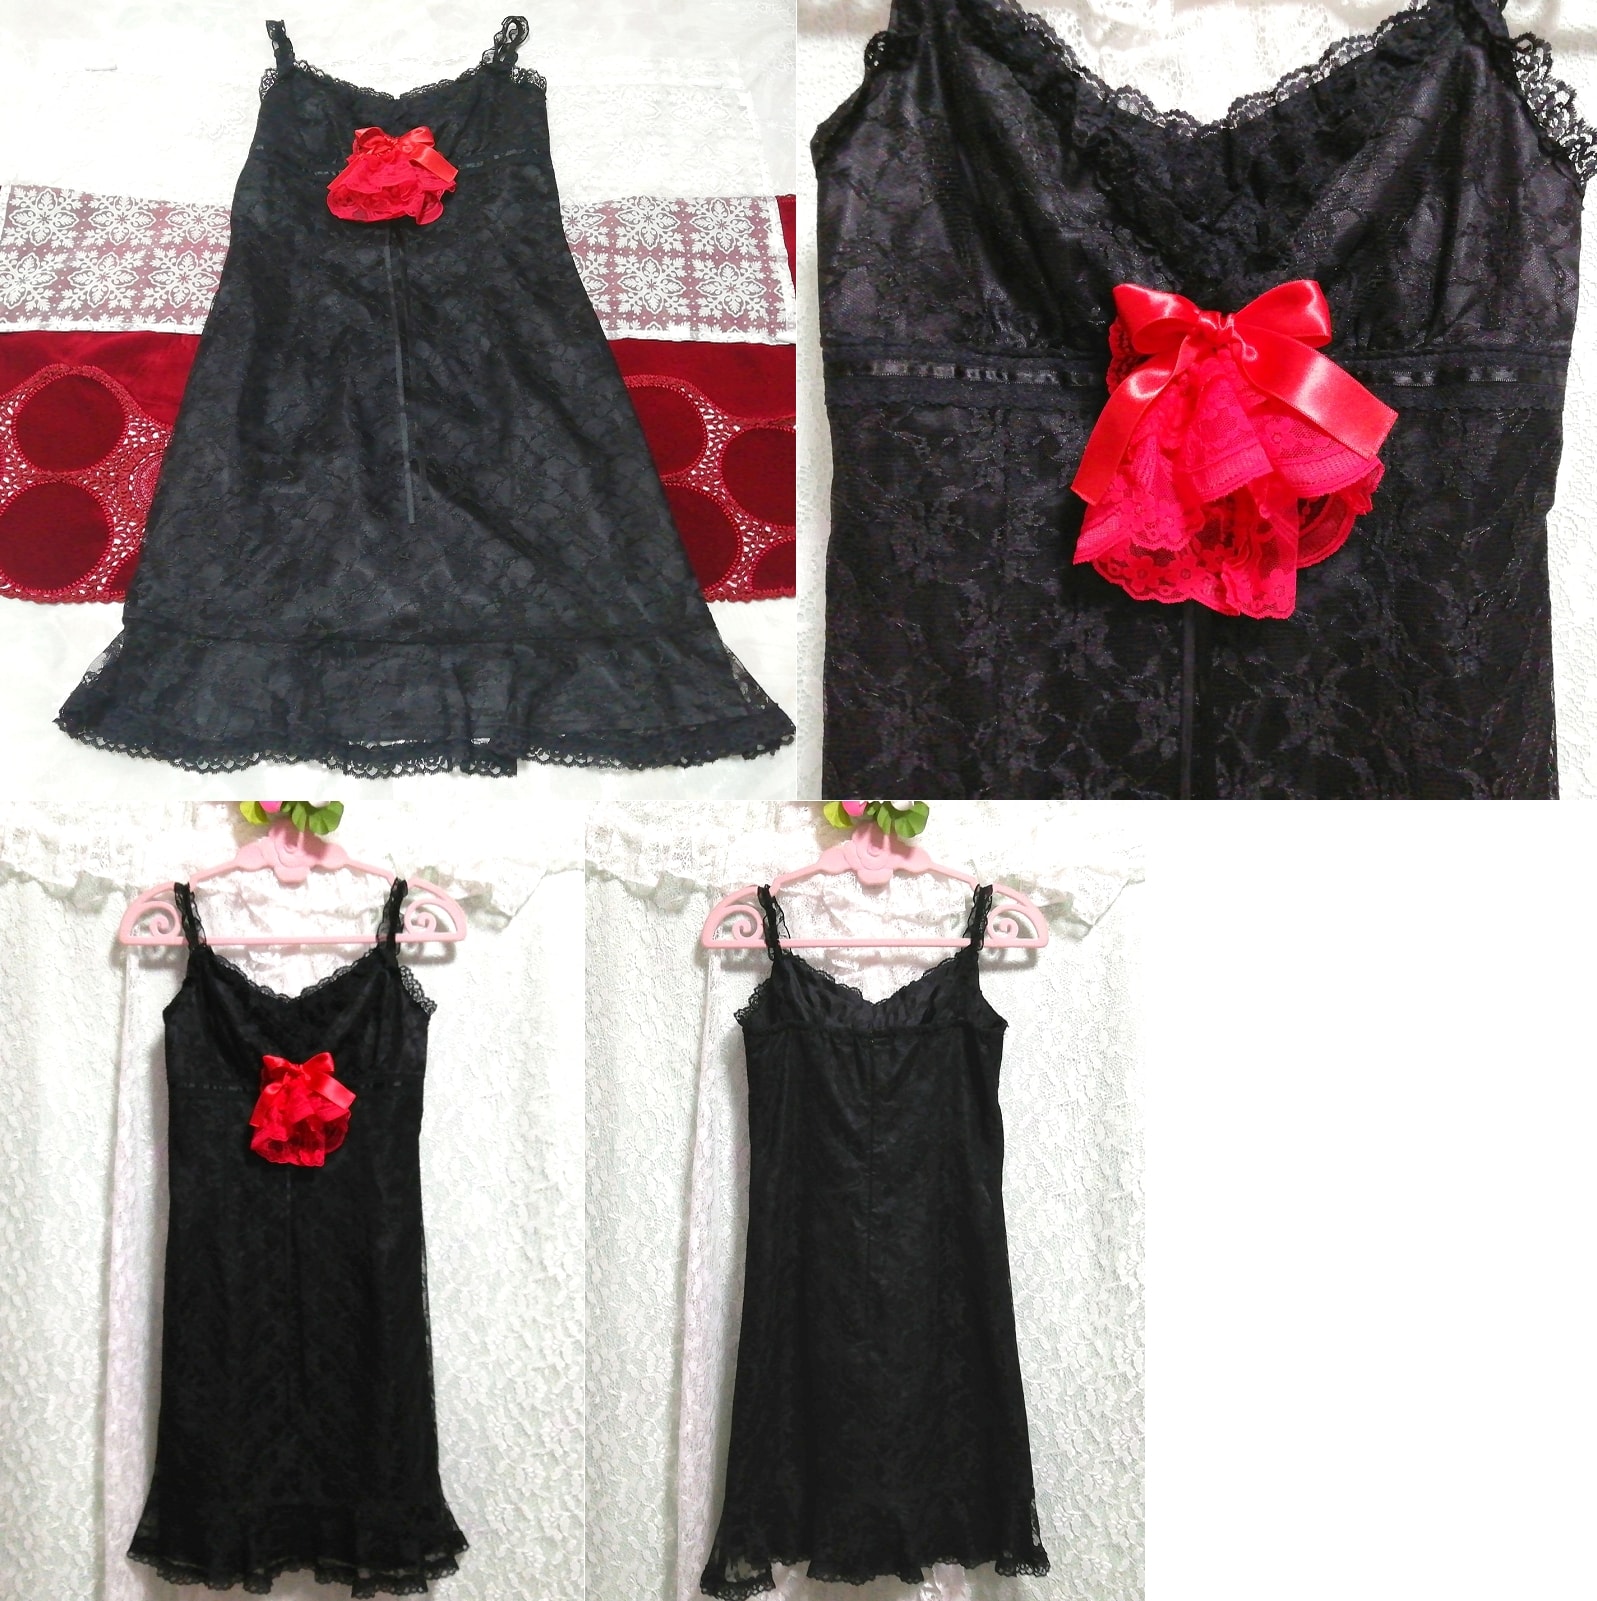 Vestido camisón negligee camisola de encaje floral negro con ramillete de rosas rojas, moda, moda para damas, camisola